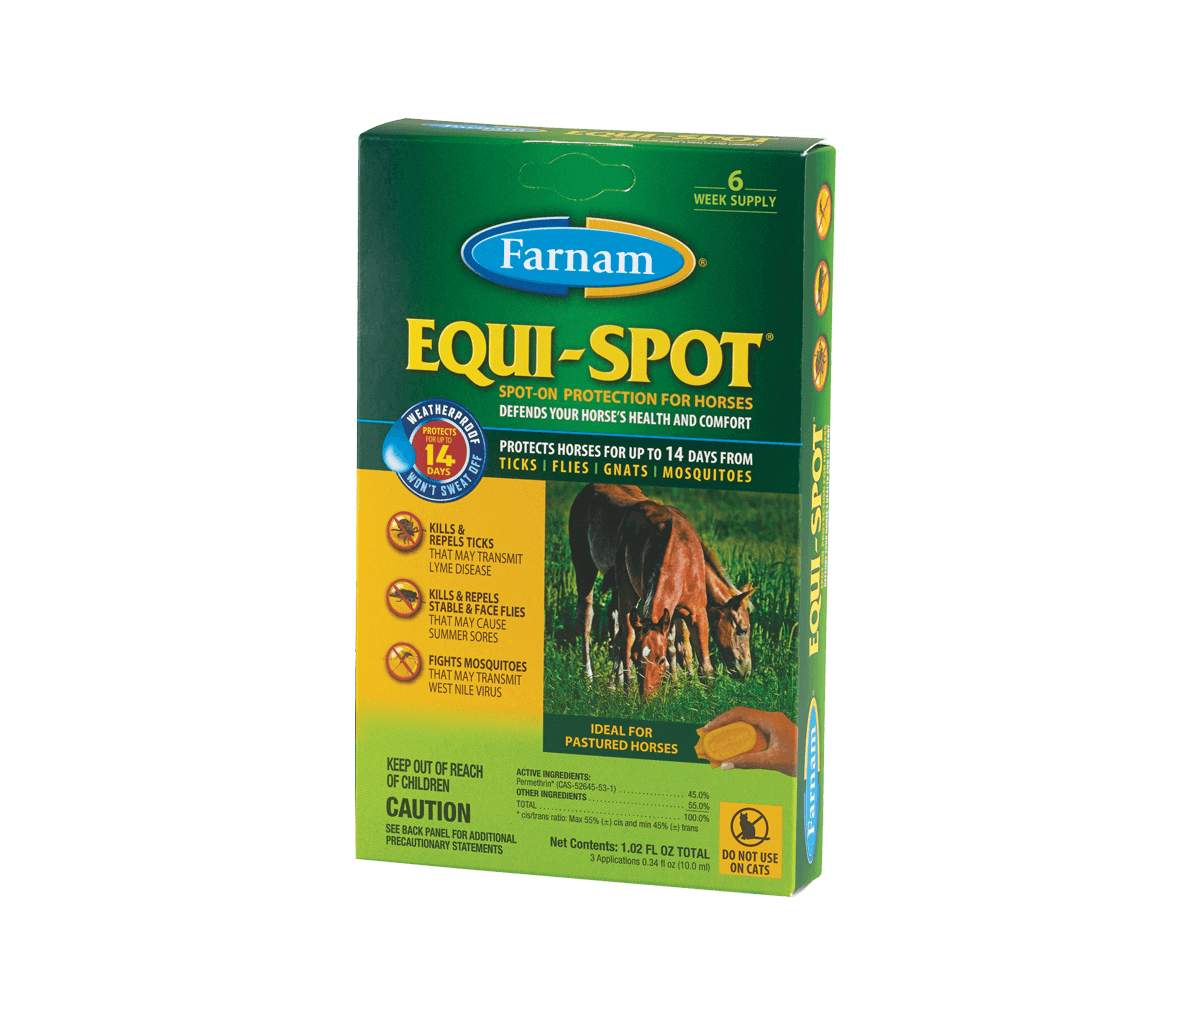 Farnam, Equi-Spot® Spot-on Protection for Horses